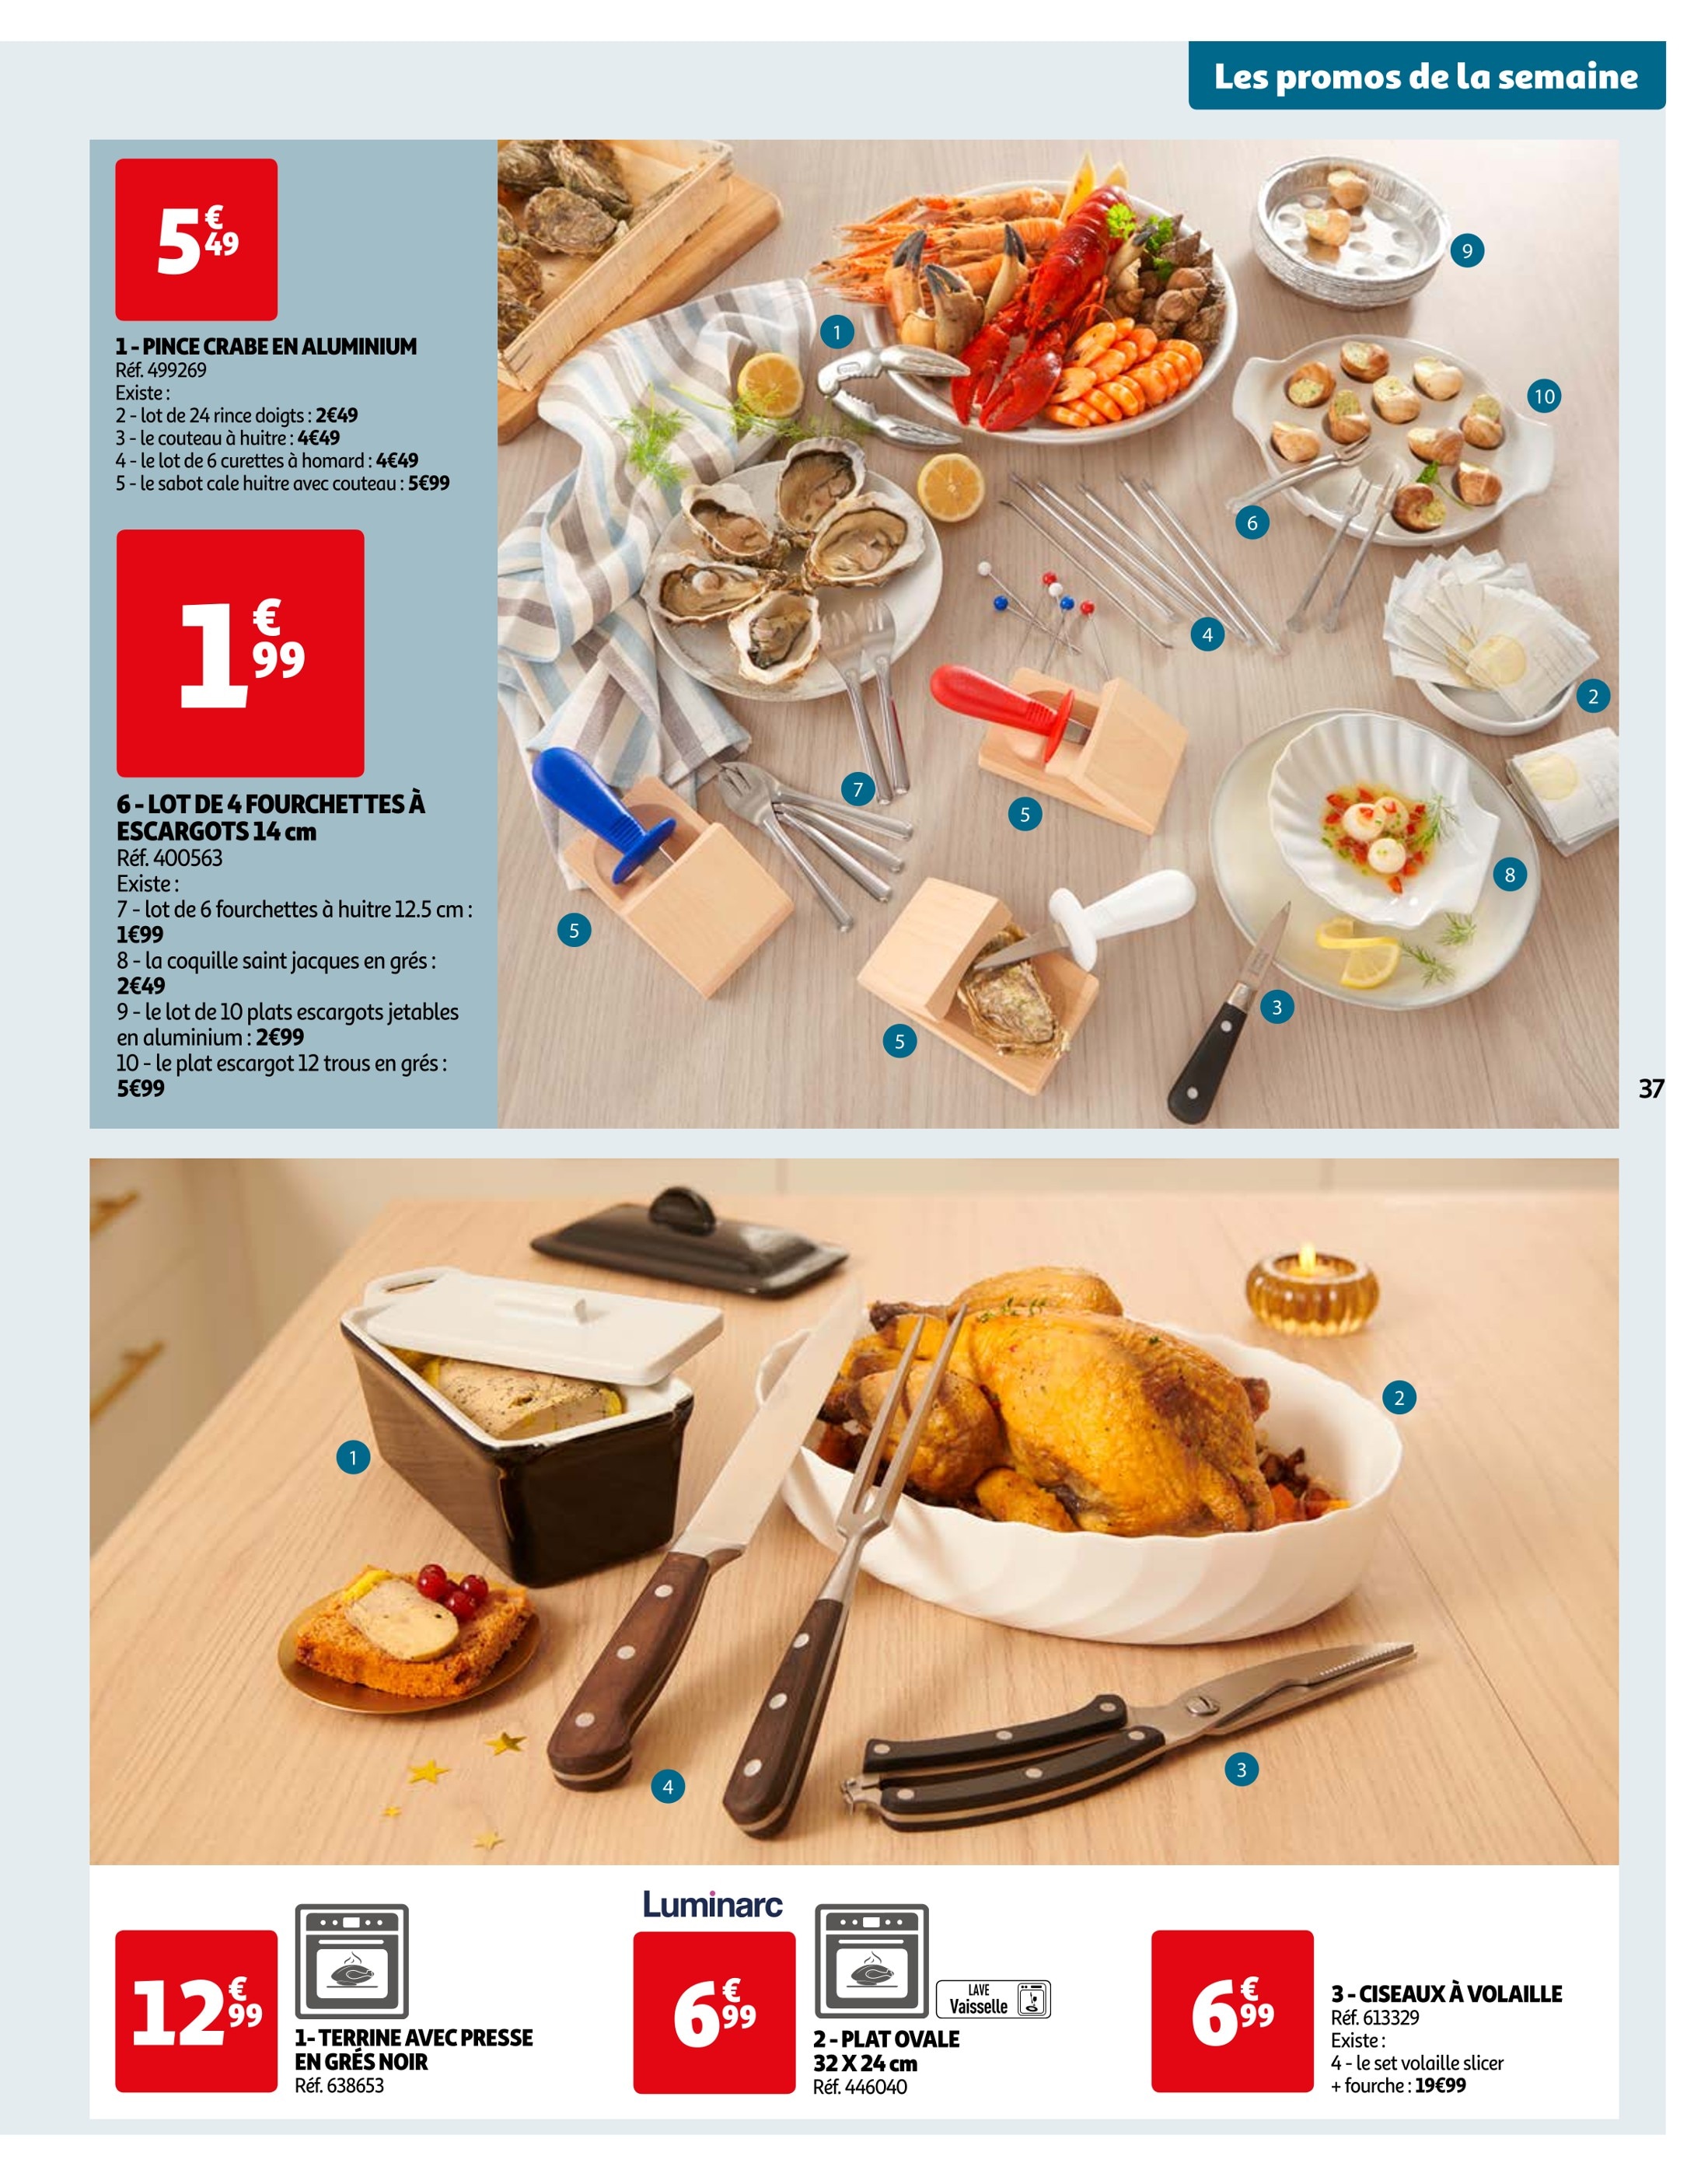 Fourchette inox CARREFOUR HOME : le lot de 6 fourchettes à Prix Carrefour